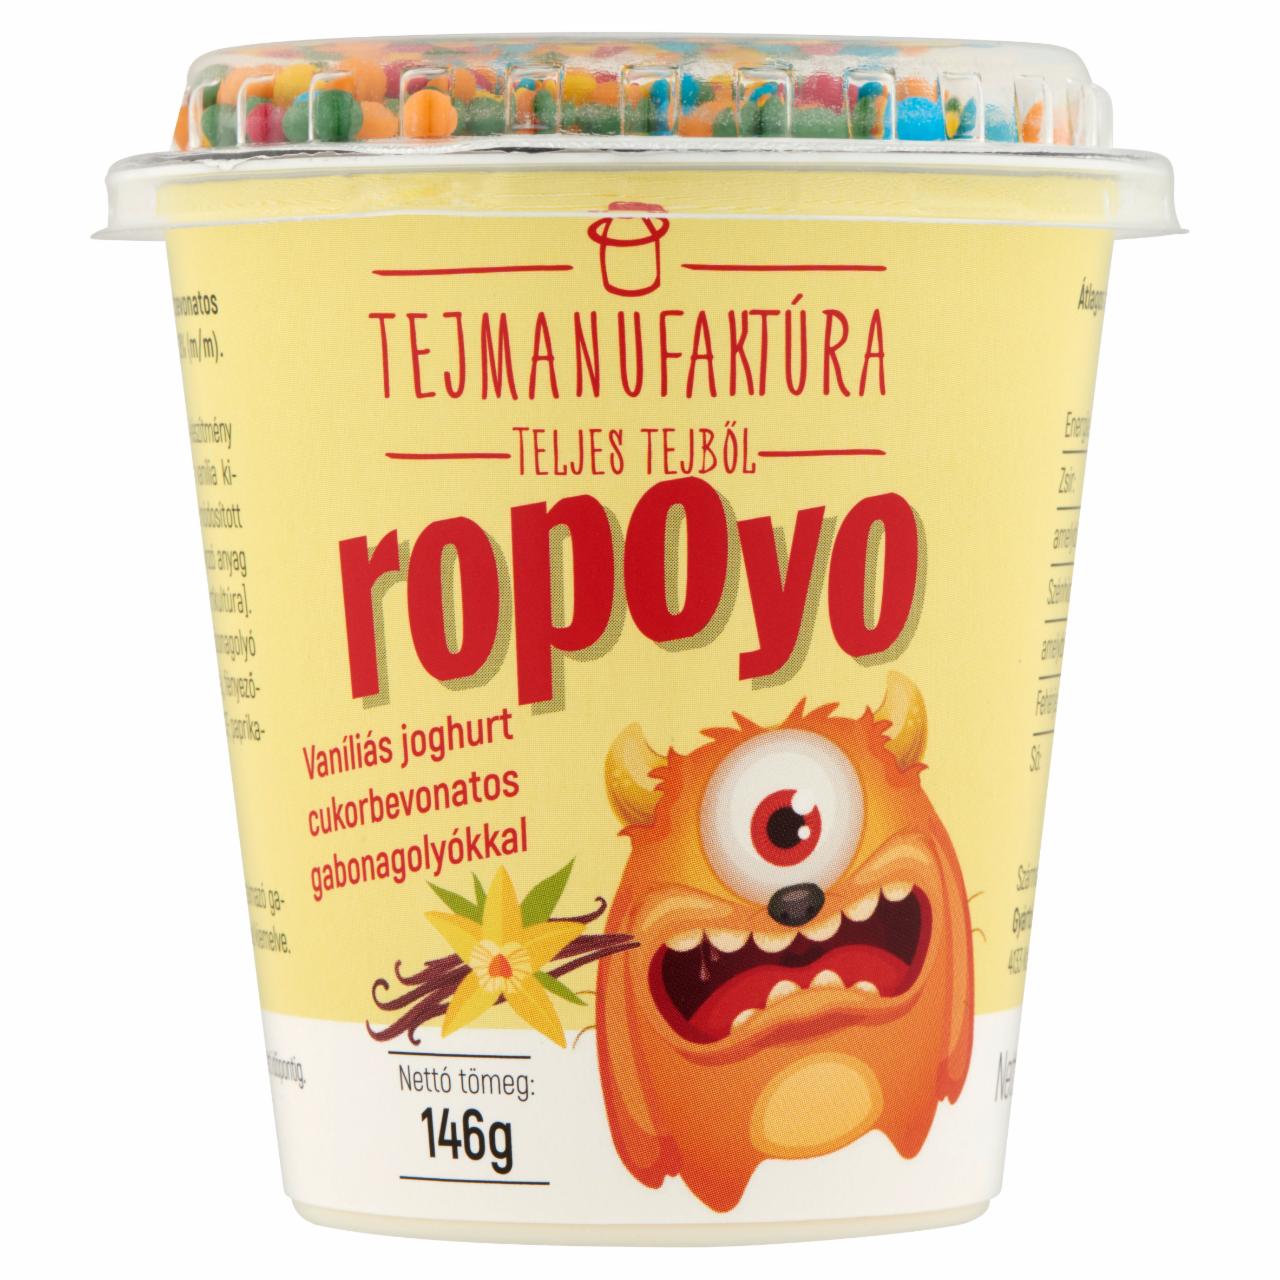 Képek - Tejmanufaktúra Ropoyo vaníliás joghurt cukorbevonatos gabonagolyókkal 146 g